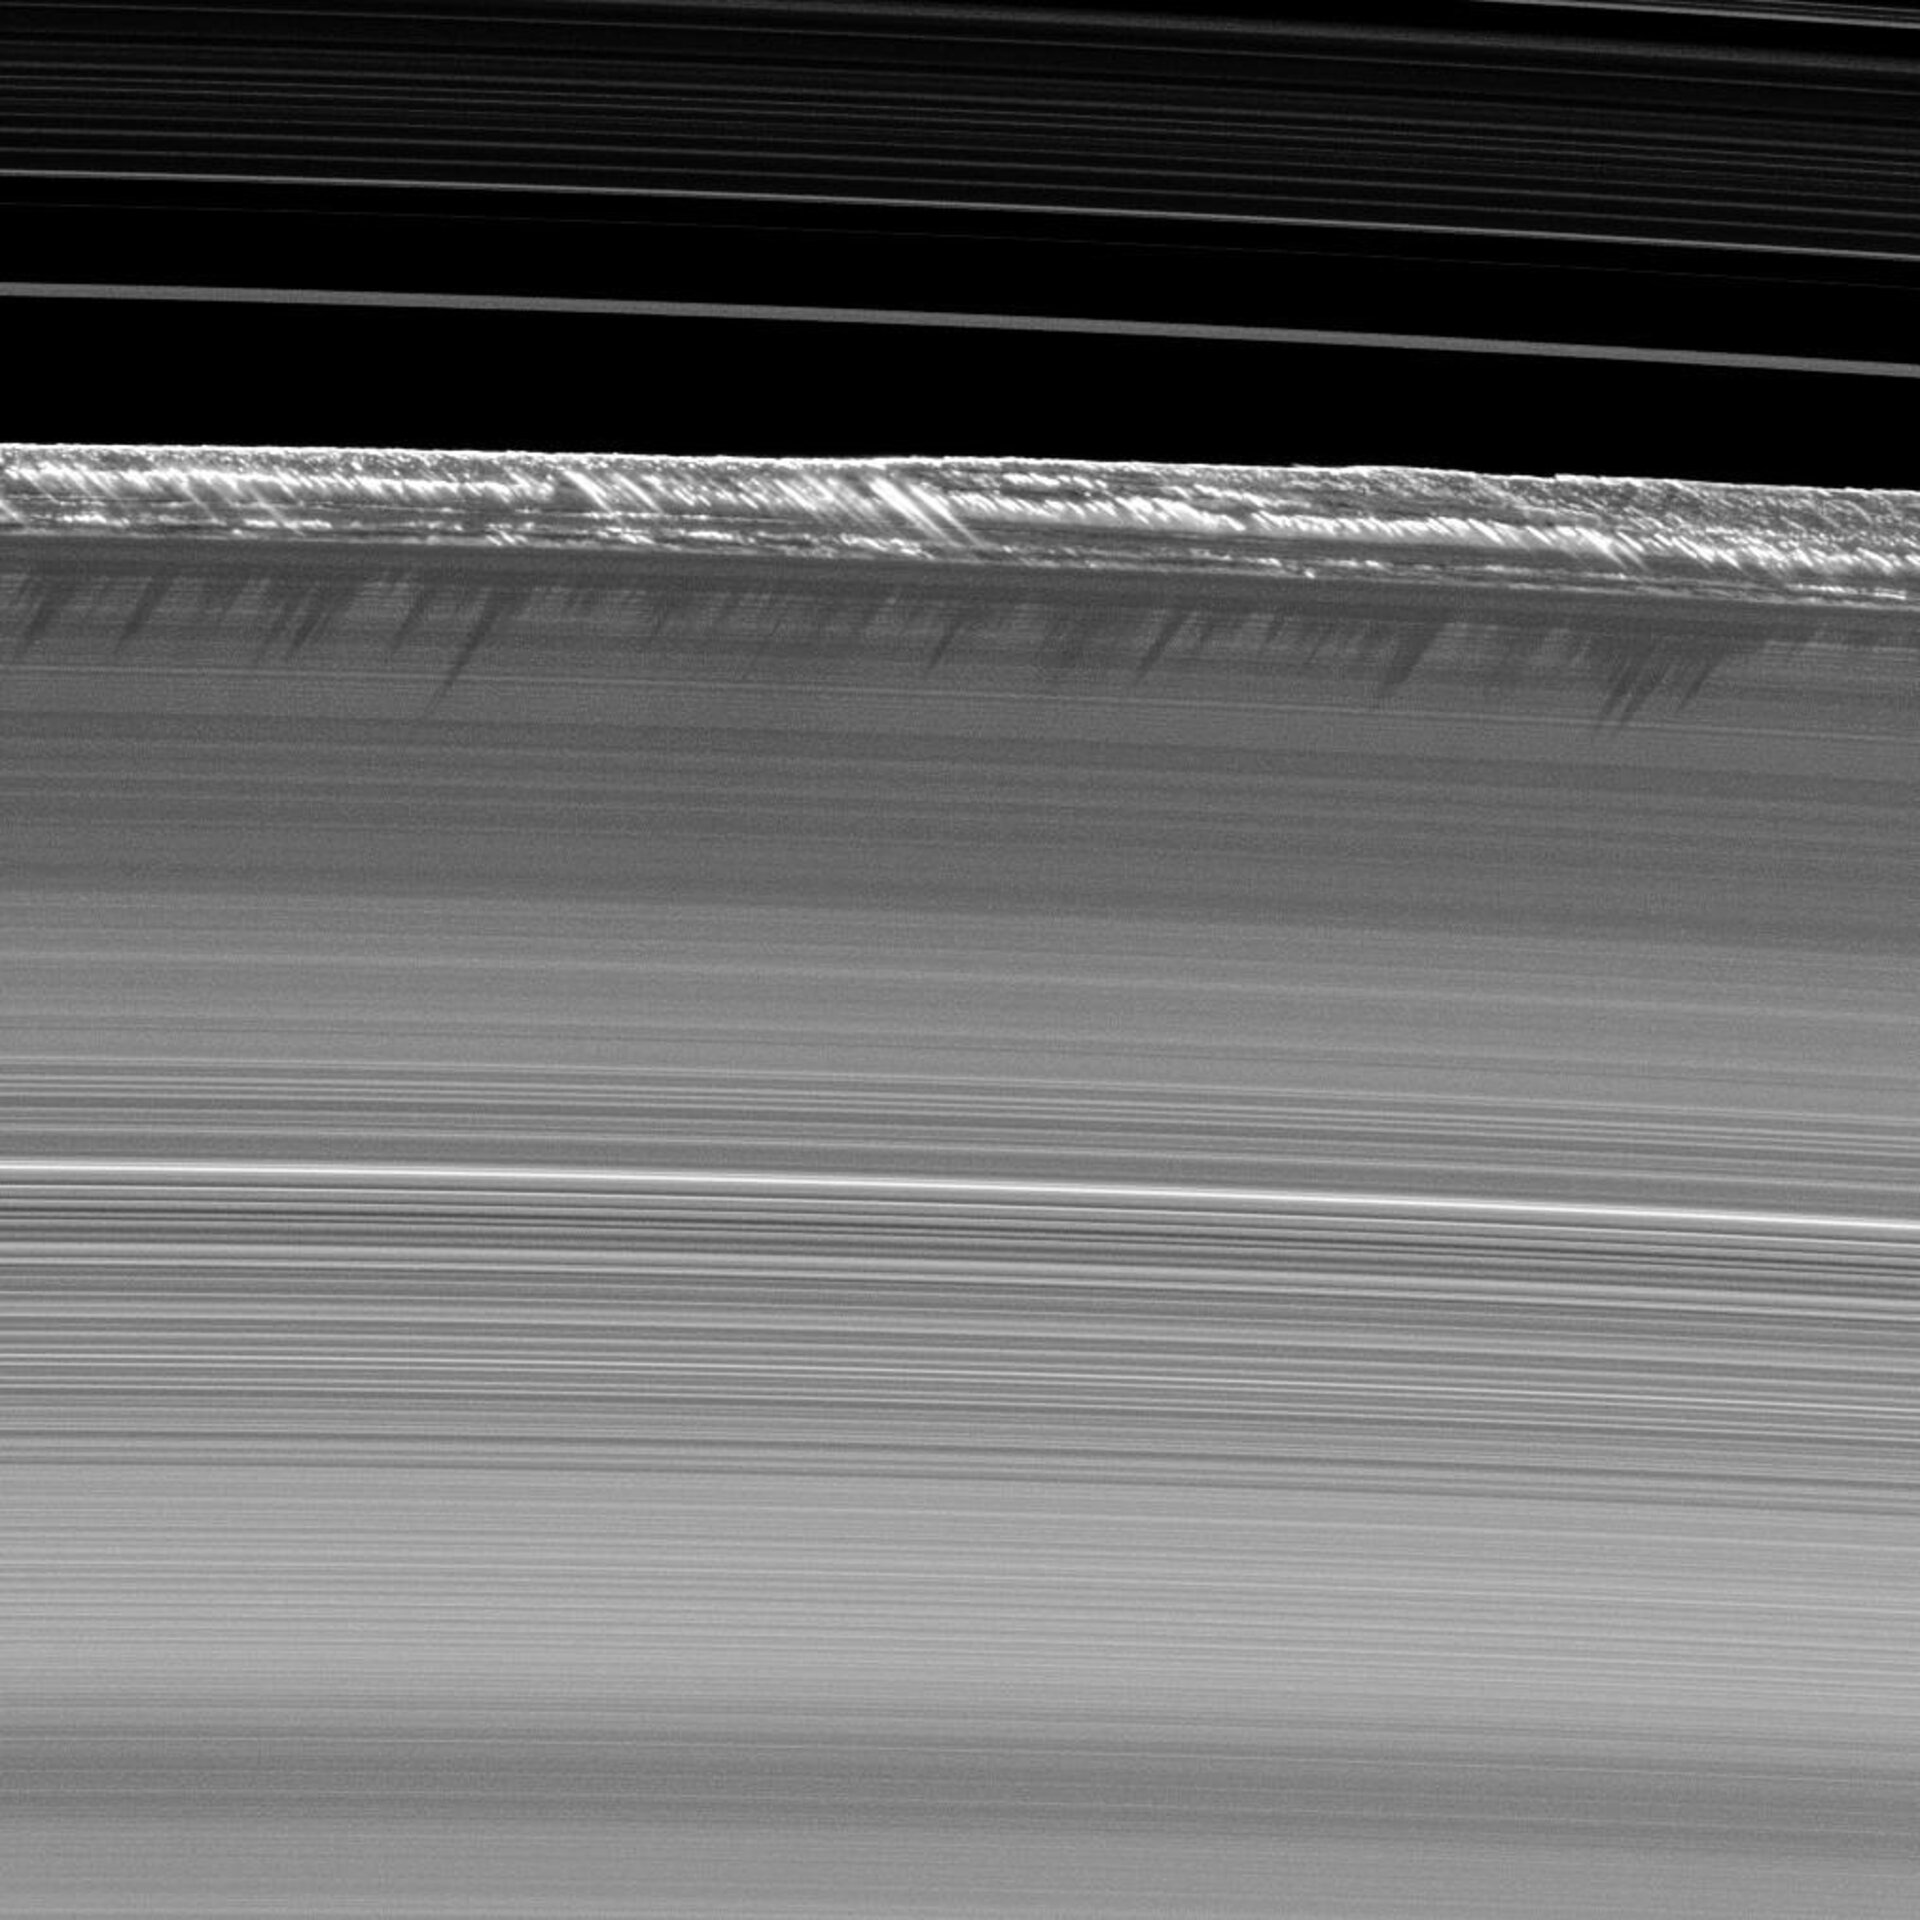 Saturn’s B ring peaks 